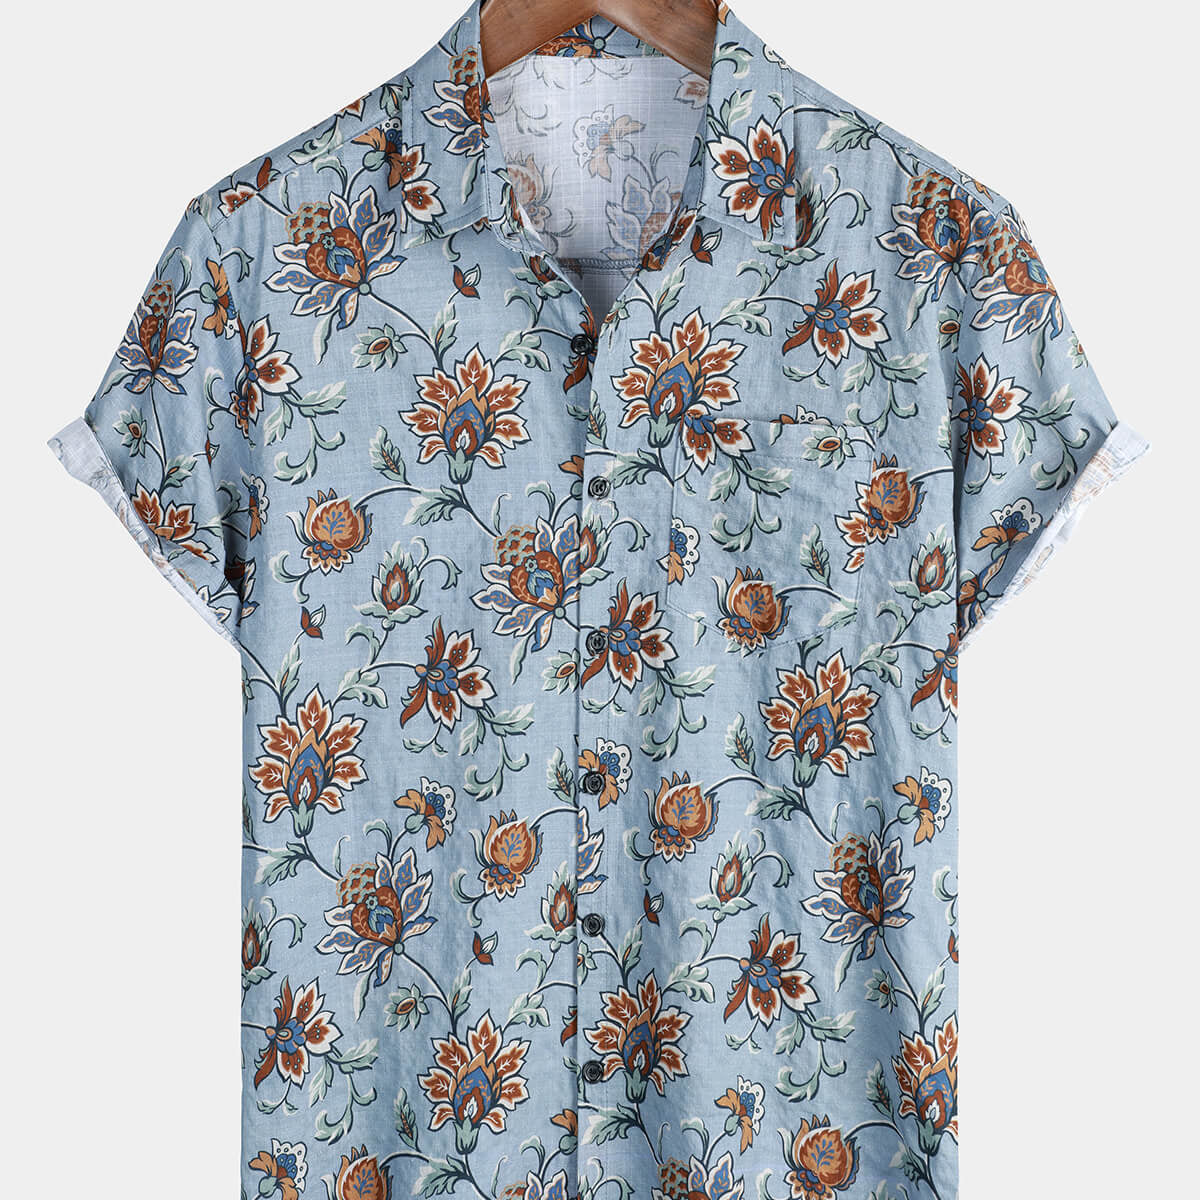 Men's Blue Floral Holiday Cotton Hawaiian Button Up Summer Shirt